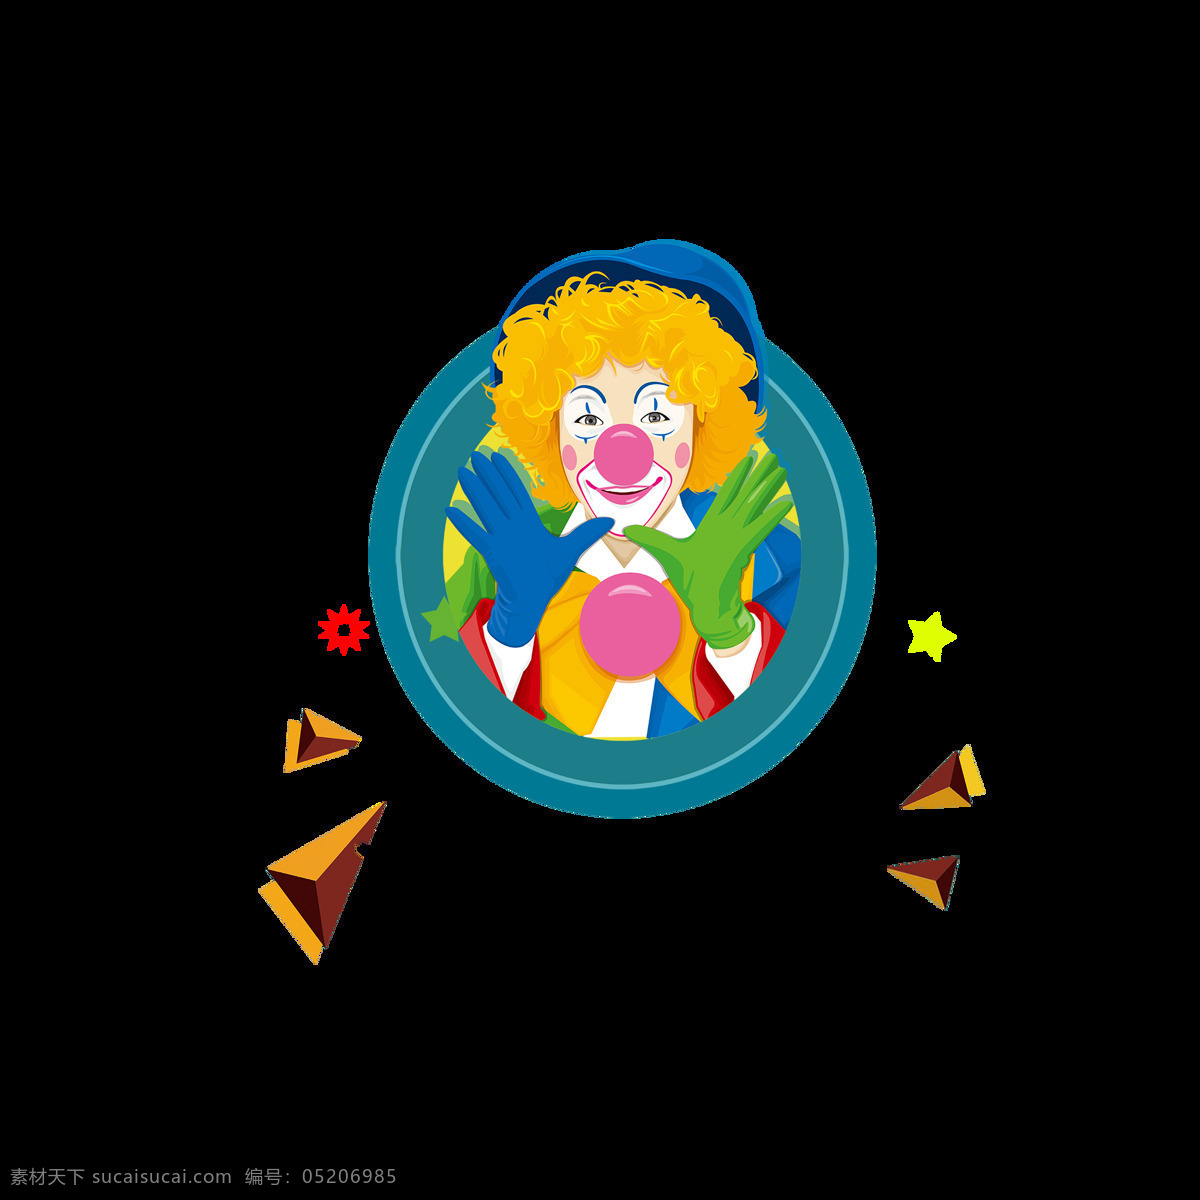 圆形 手绘 卡通 小丑 装饰 彩色 可爱 三角形 飘浮素材 愚人节